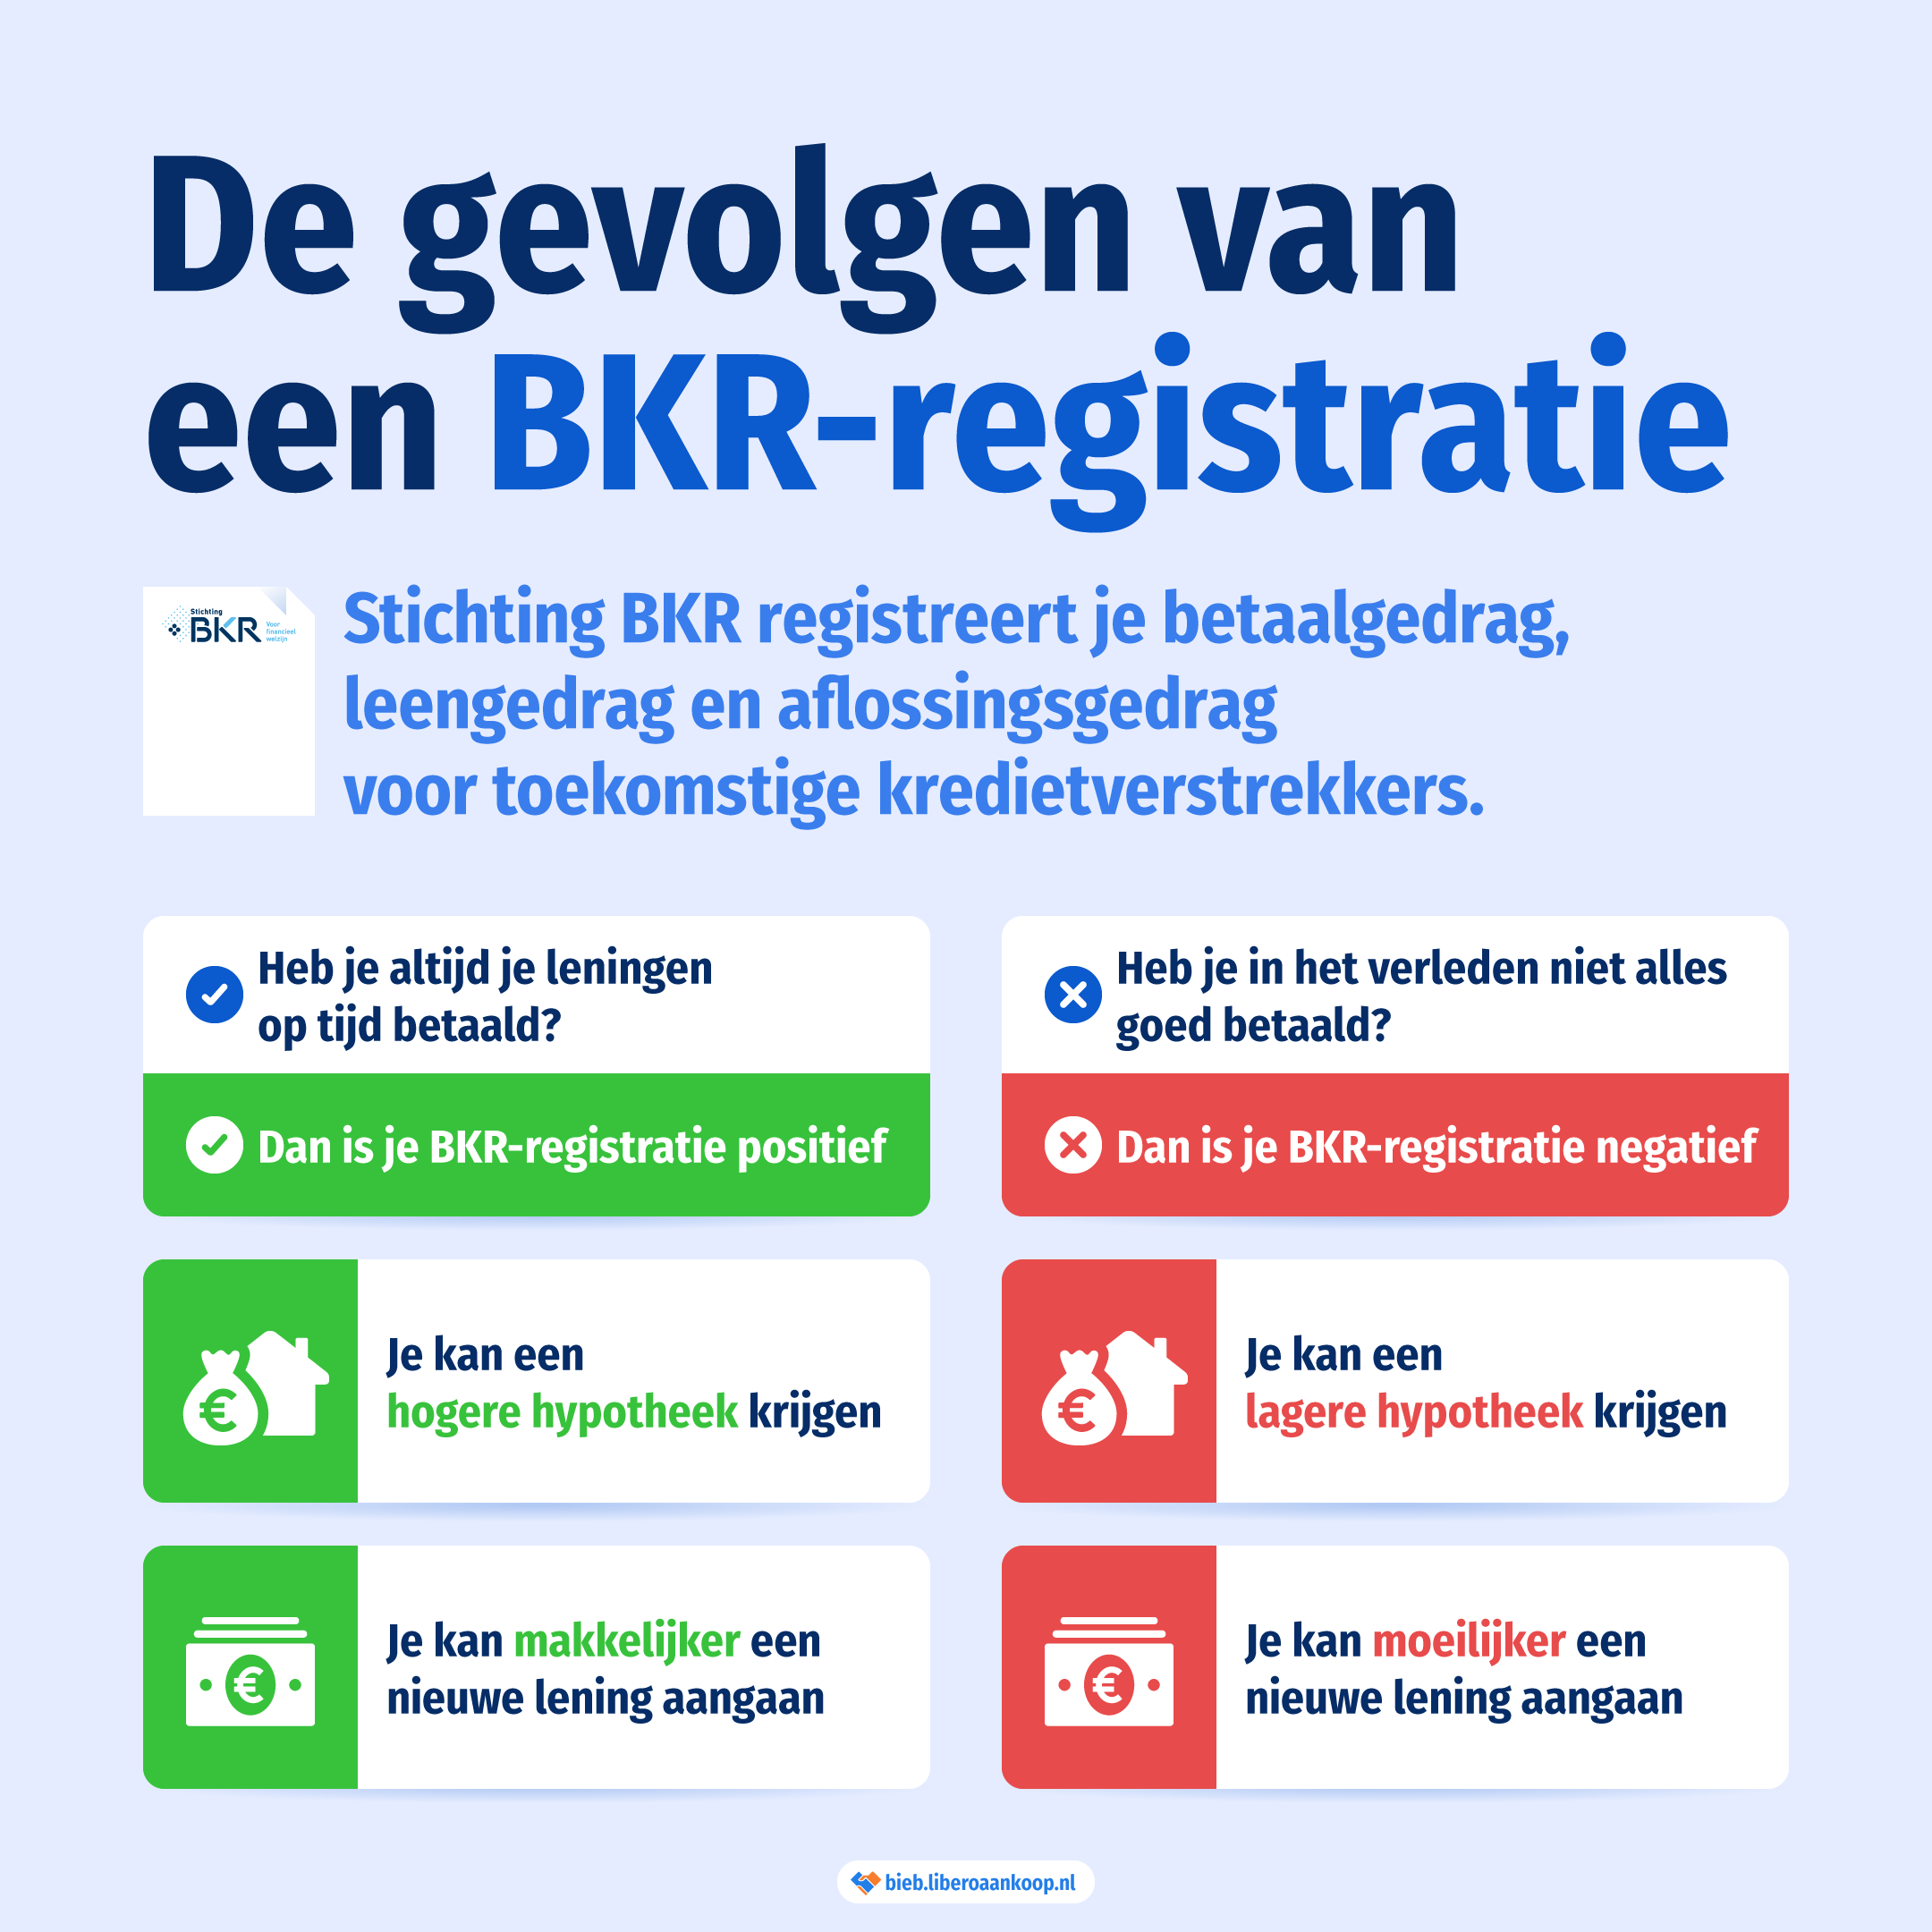 De gevolgen van een BKR-registratie